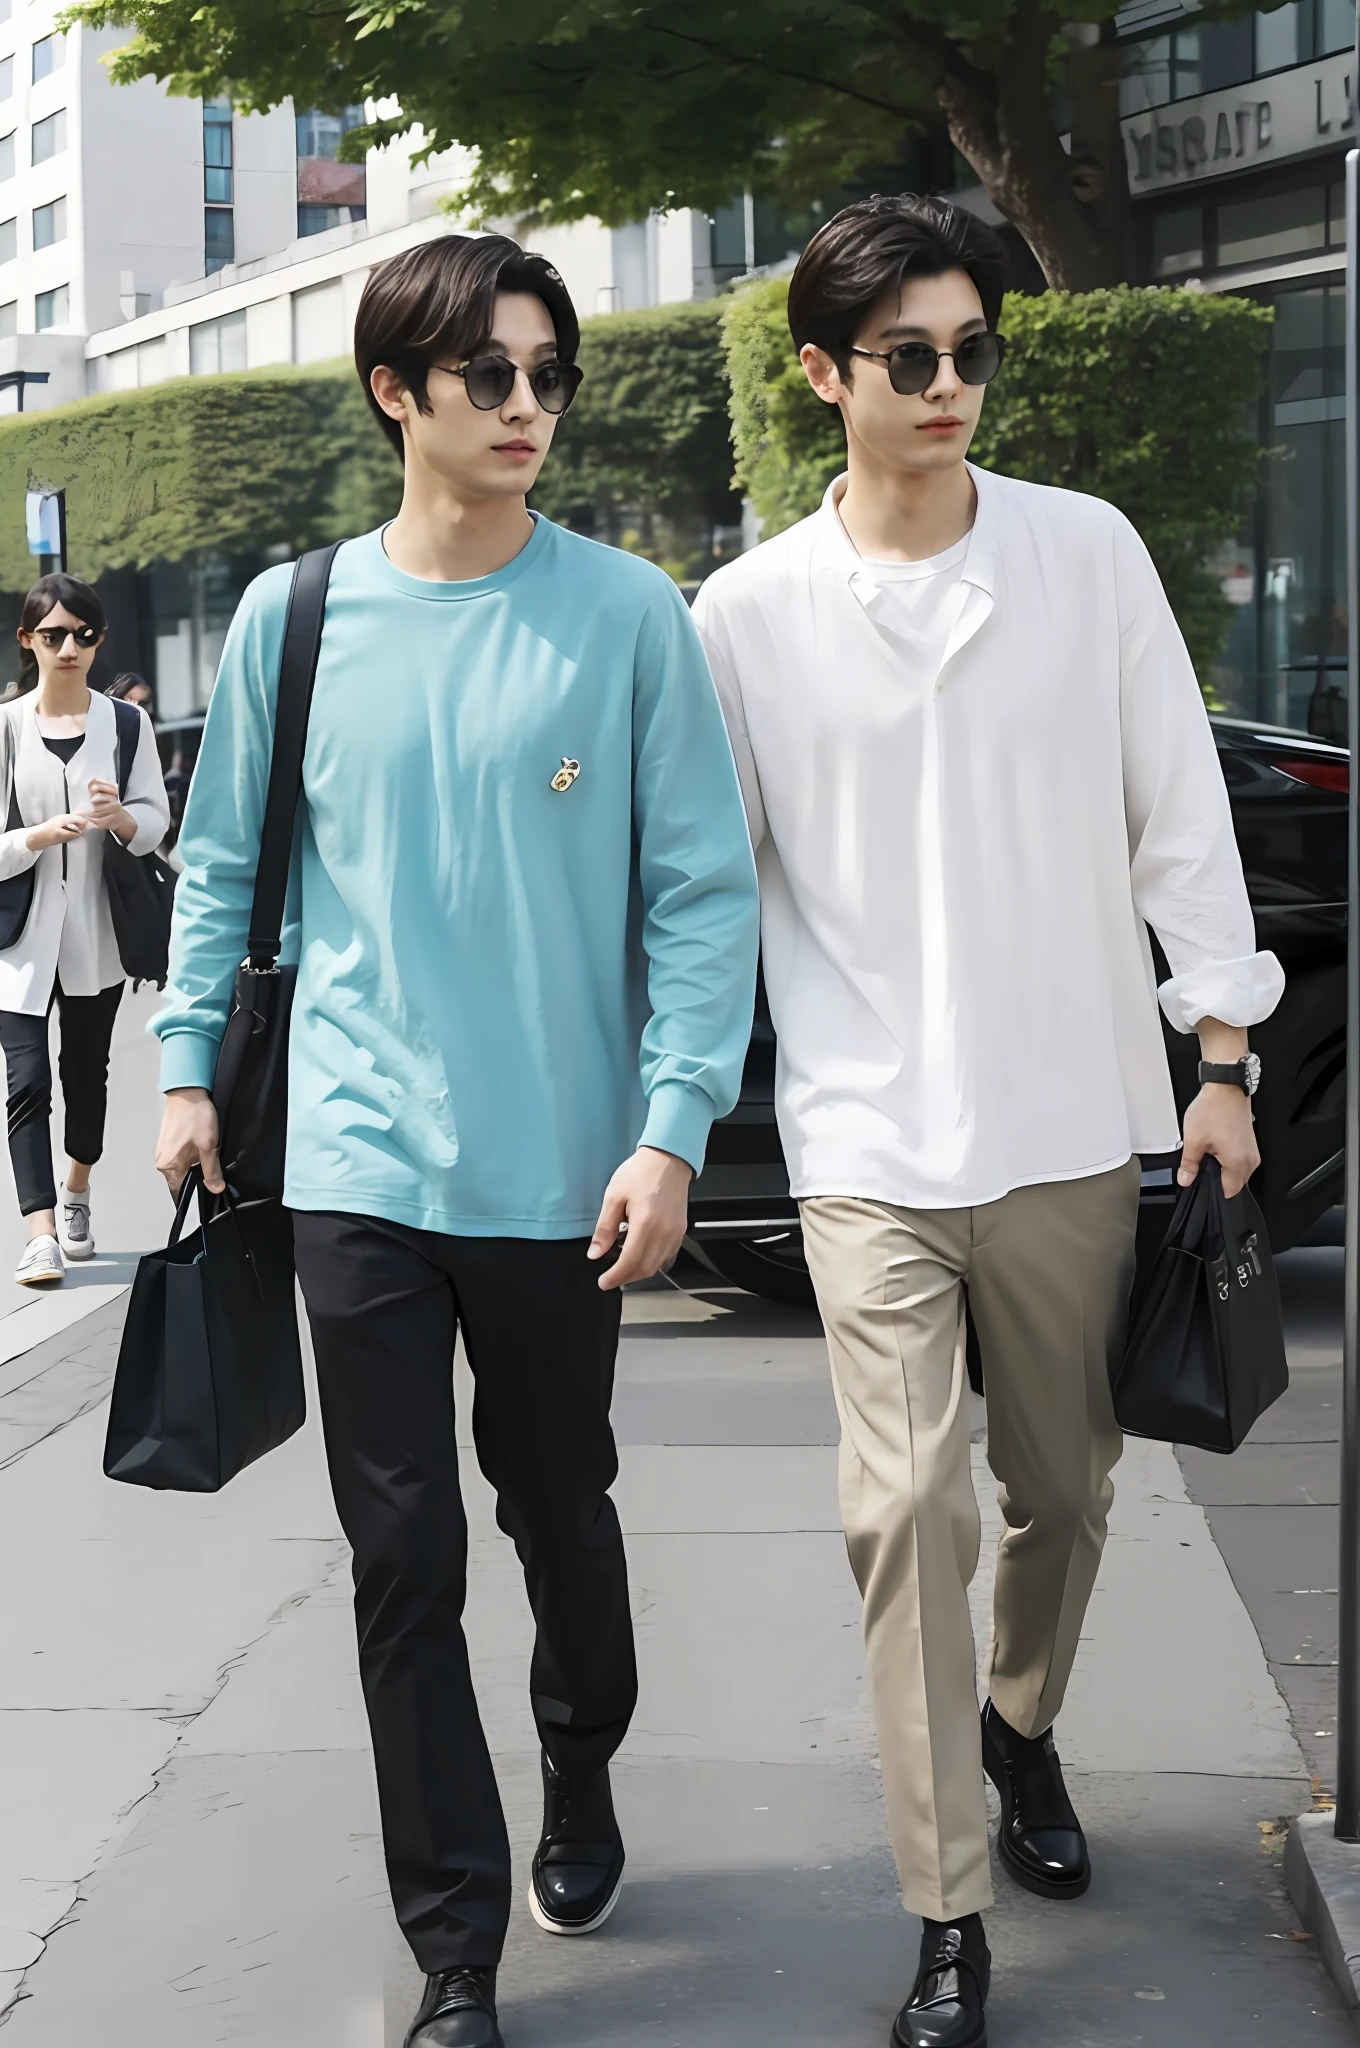 Dos hombres caminando con bolsas en mano., calle, Imágenes de paparazzi, tiempo soleado